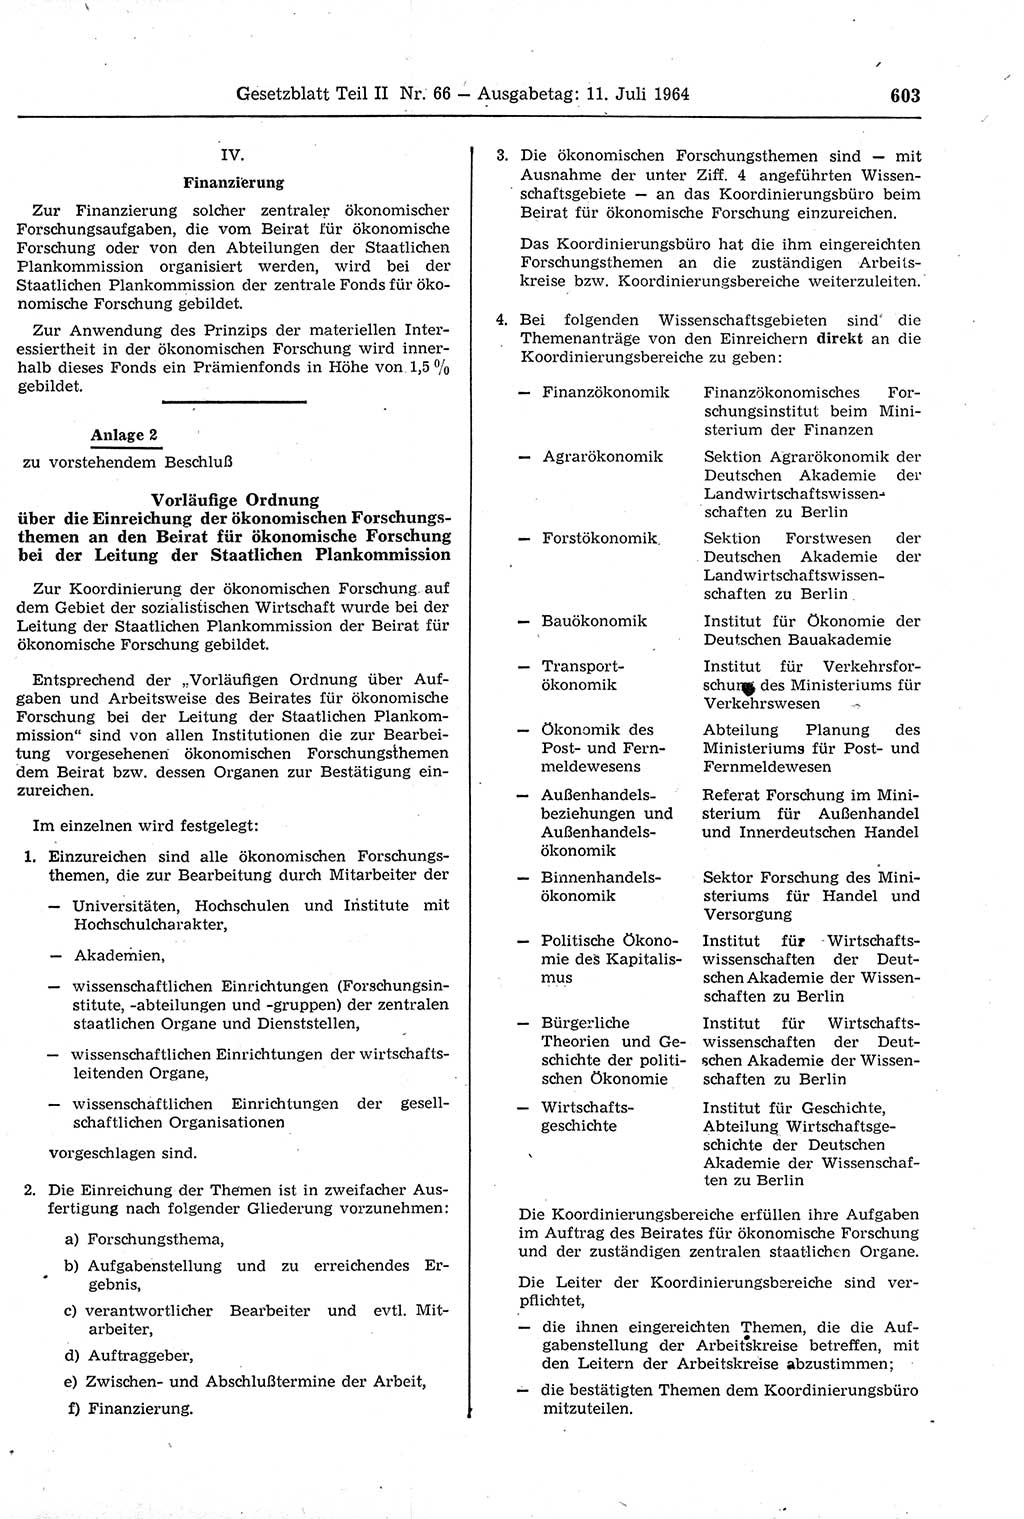 Gesetzblatt (GBl.) der Deutschen Demokratischen Republik (DDR) Teil ⅠⅠ 1964, Seite 603 (GBl. DDR ⅠⅠ 1964, S. 603)